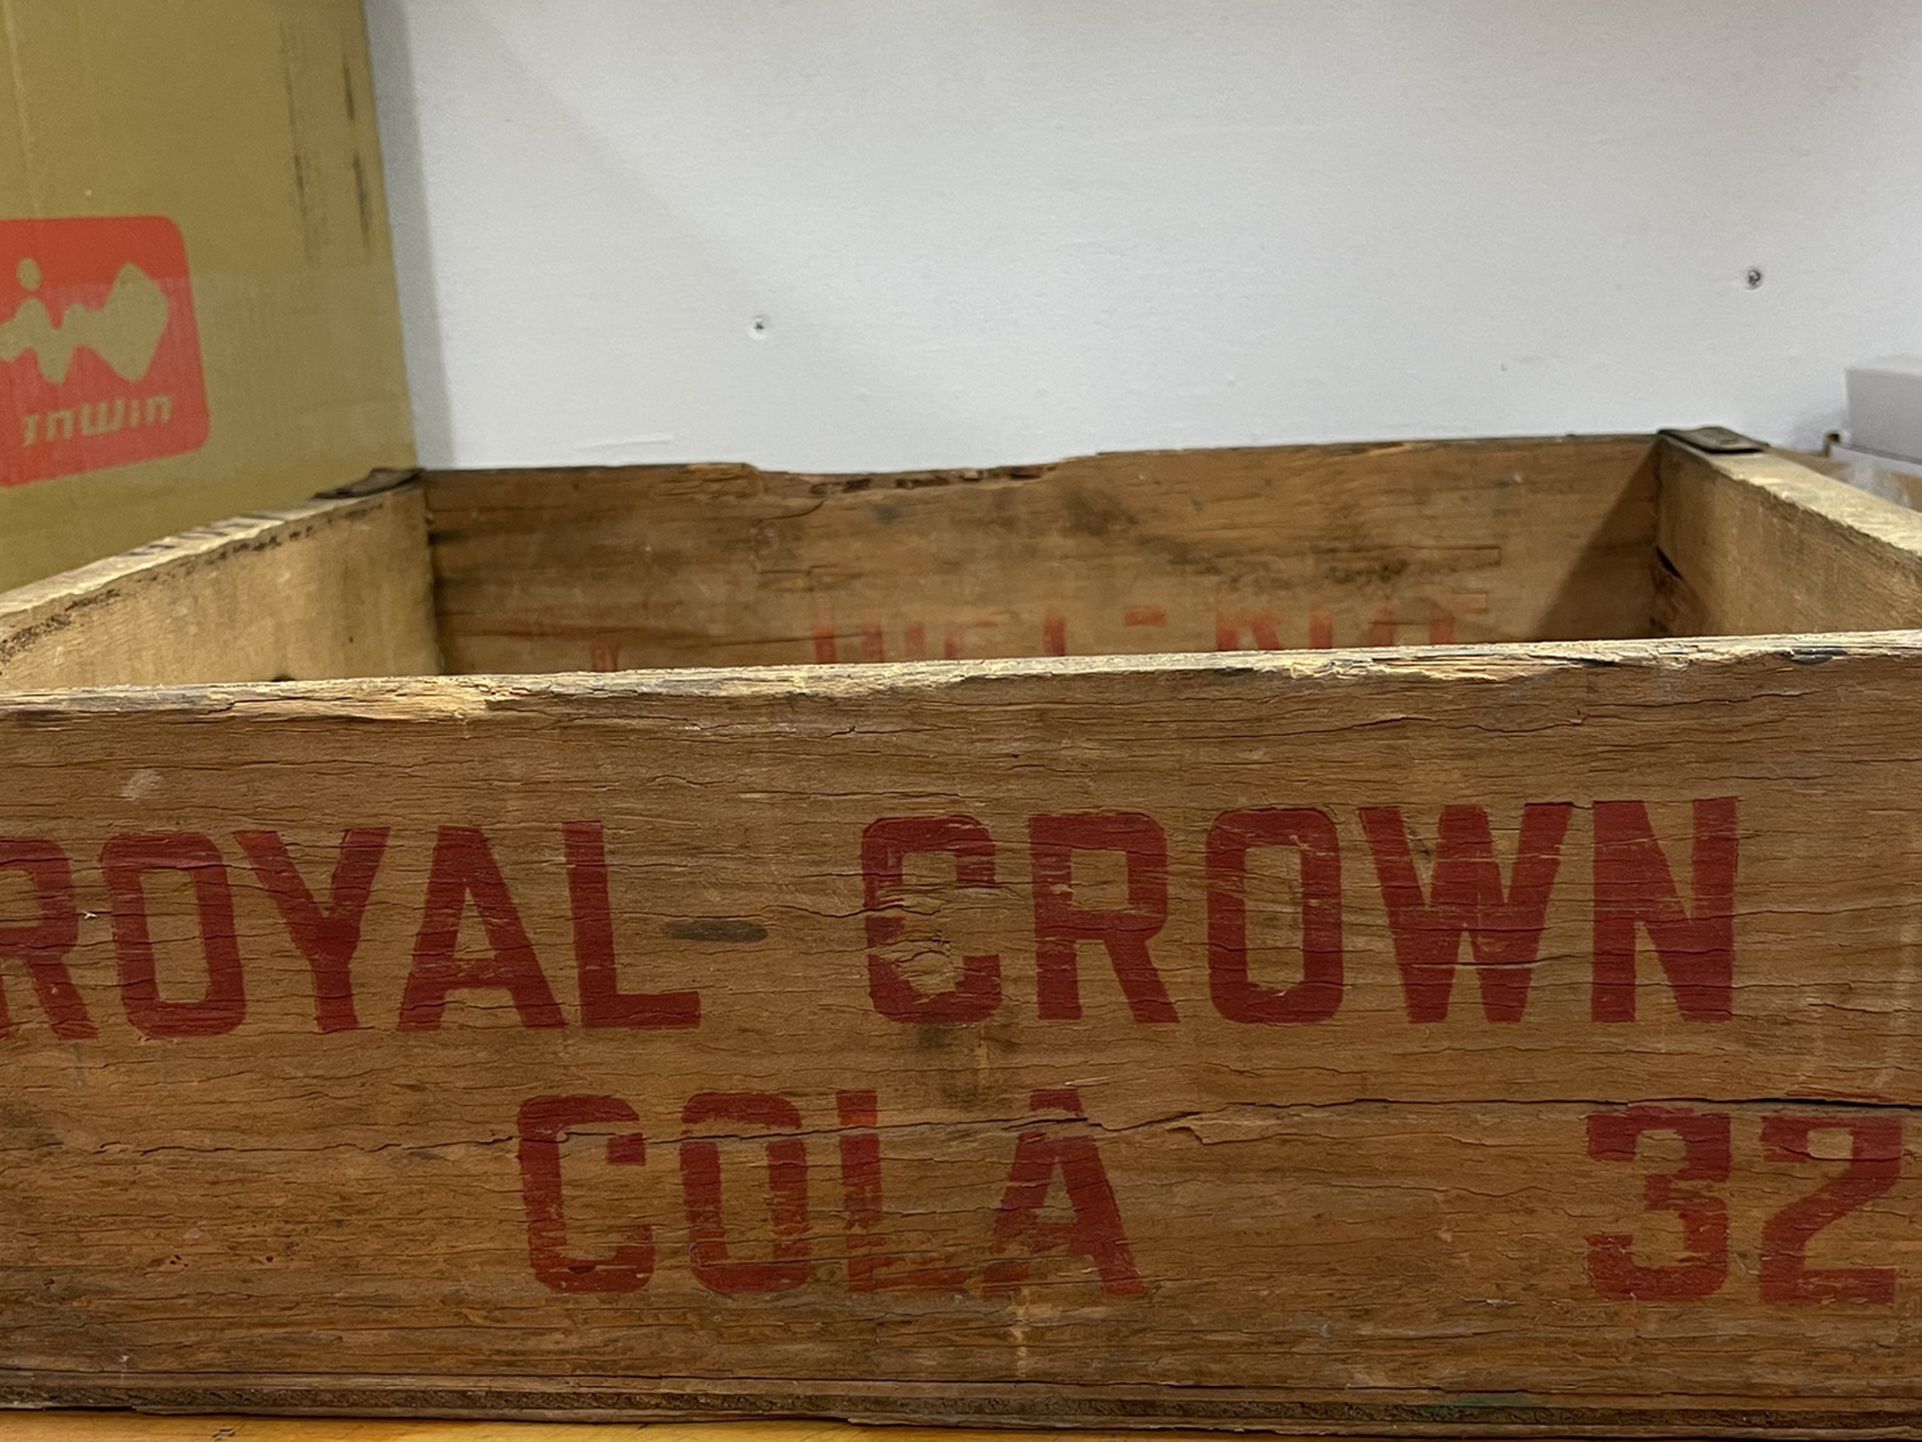 Old Royal Crown Soda Box